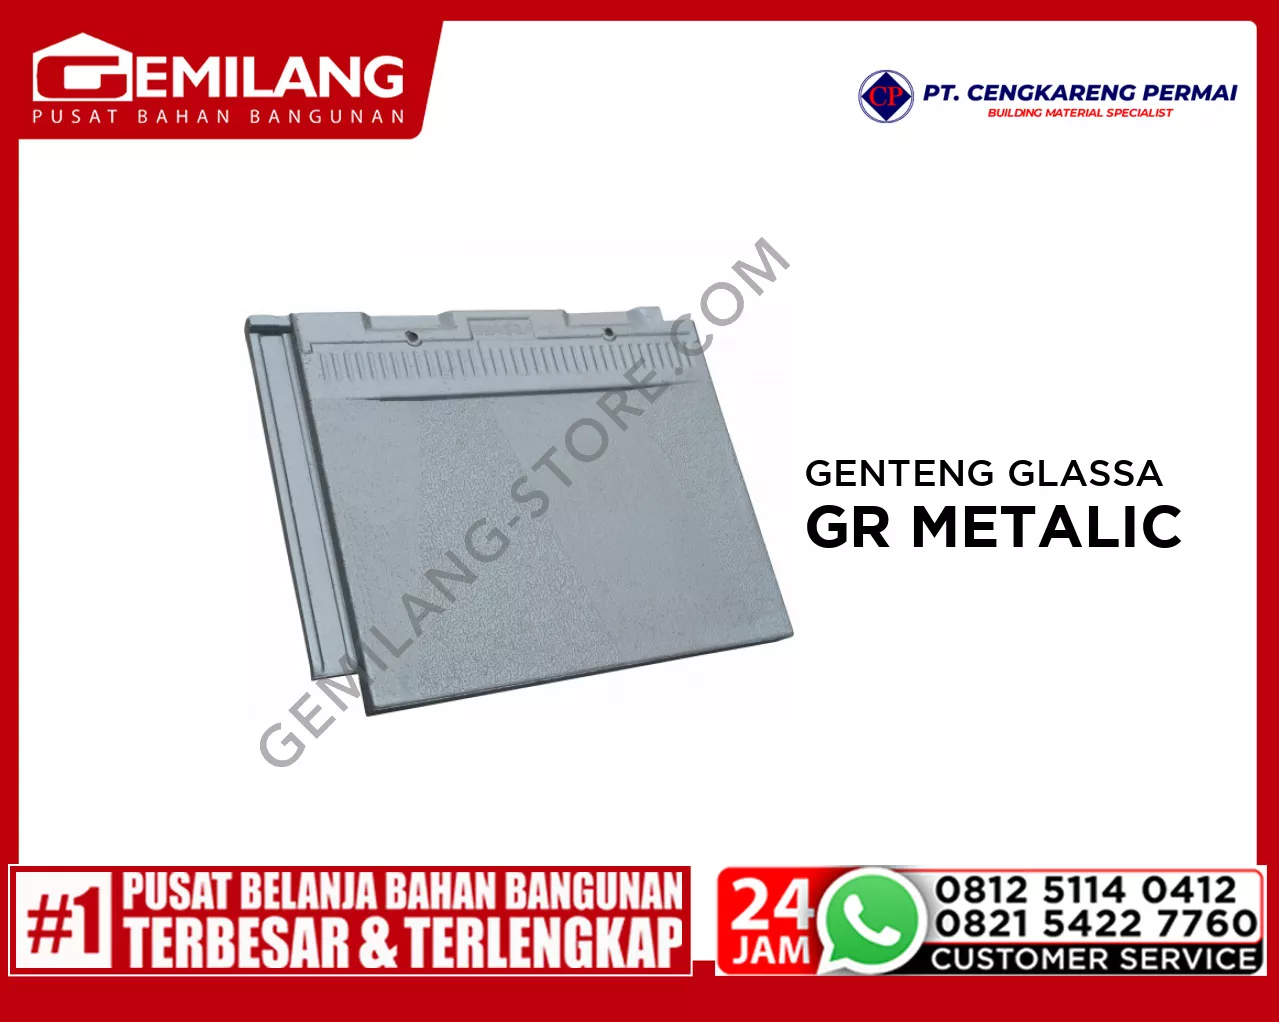 CP GENTENG GLASSA SUNSHINE (4.6 Kg) GREY METALIC